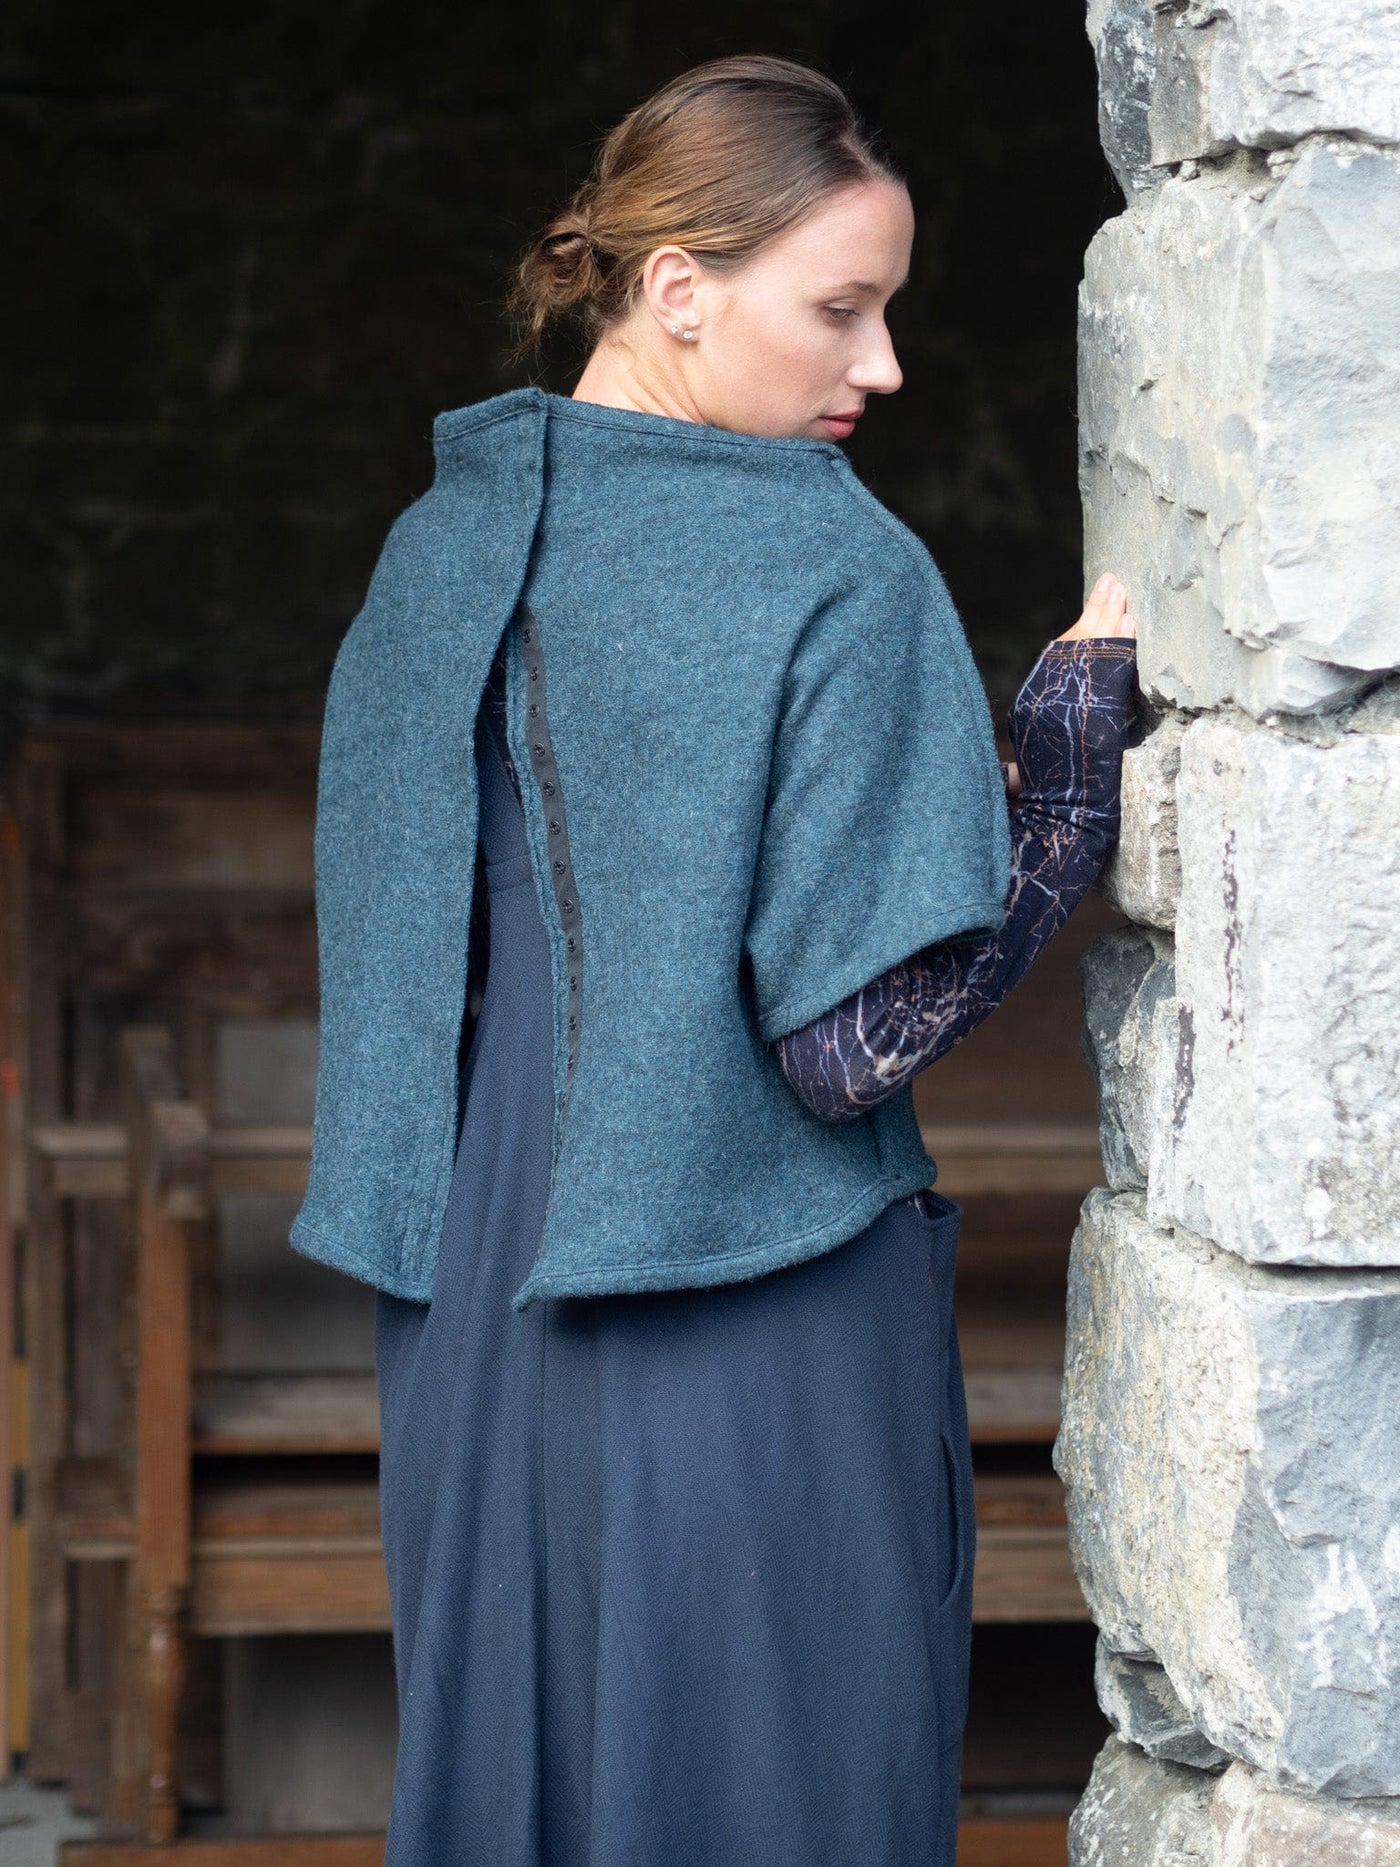 MISE TUSA Jackets + Coats One Size blue reversible knit